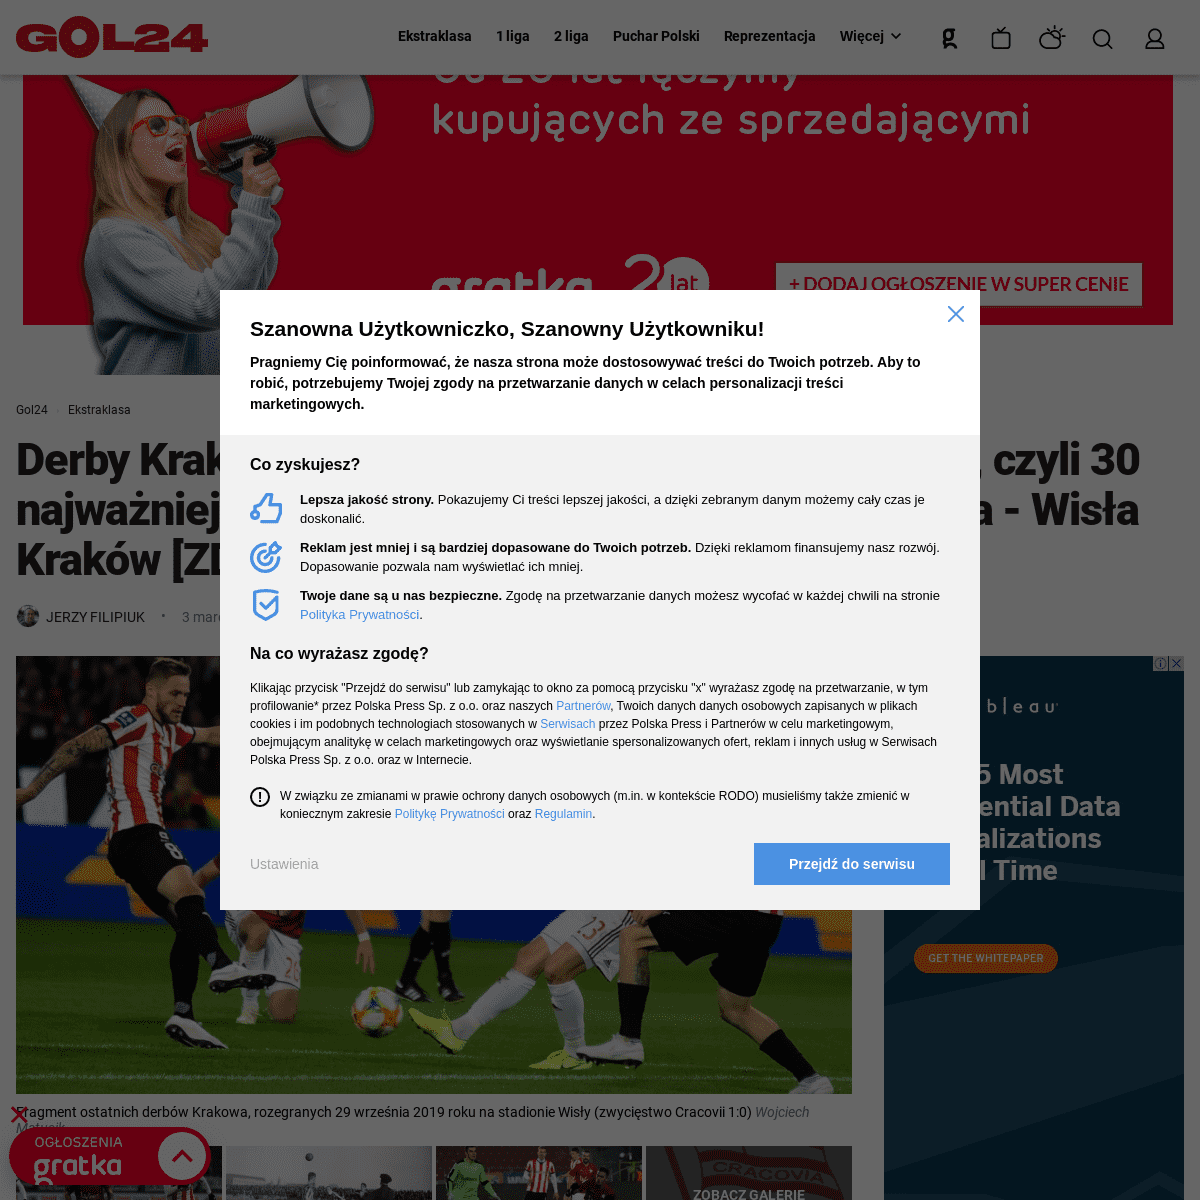 A complete backup of gol24.pl/derby-krakowa-2020-rekordy-serie-bohaterowie-czyli-30-najwazniejszych-faktow-z-historii-meczow-cra